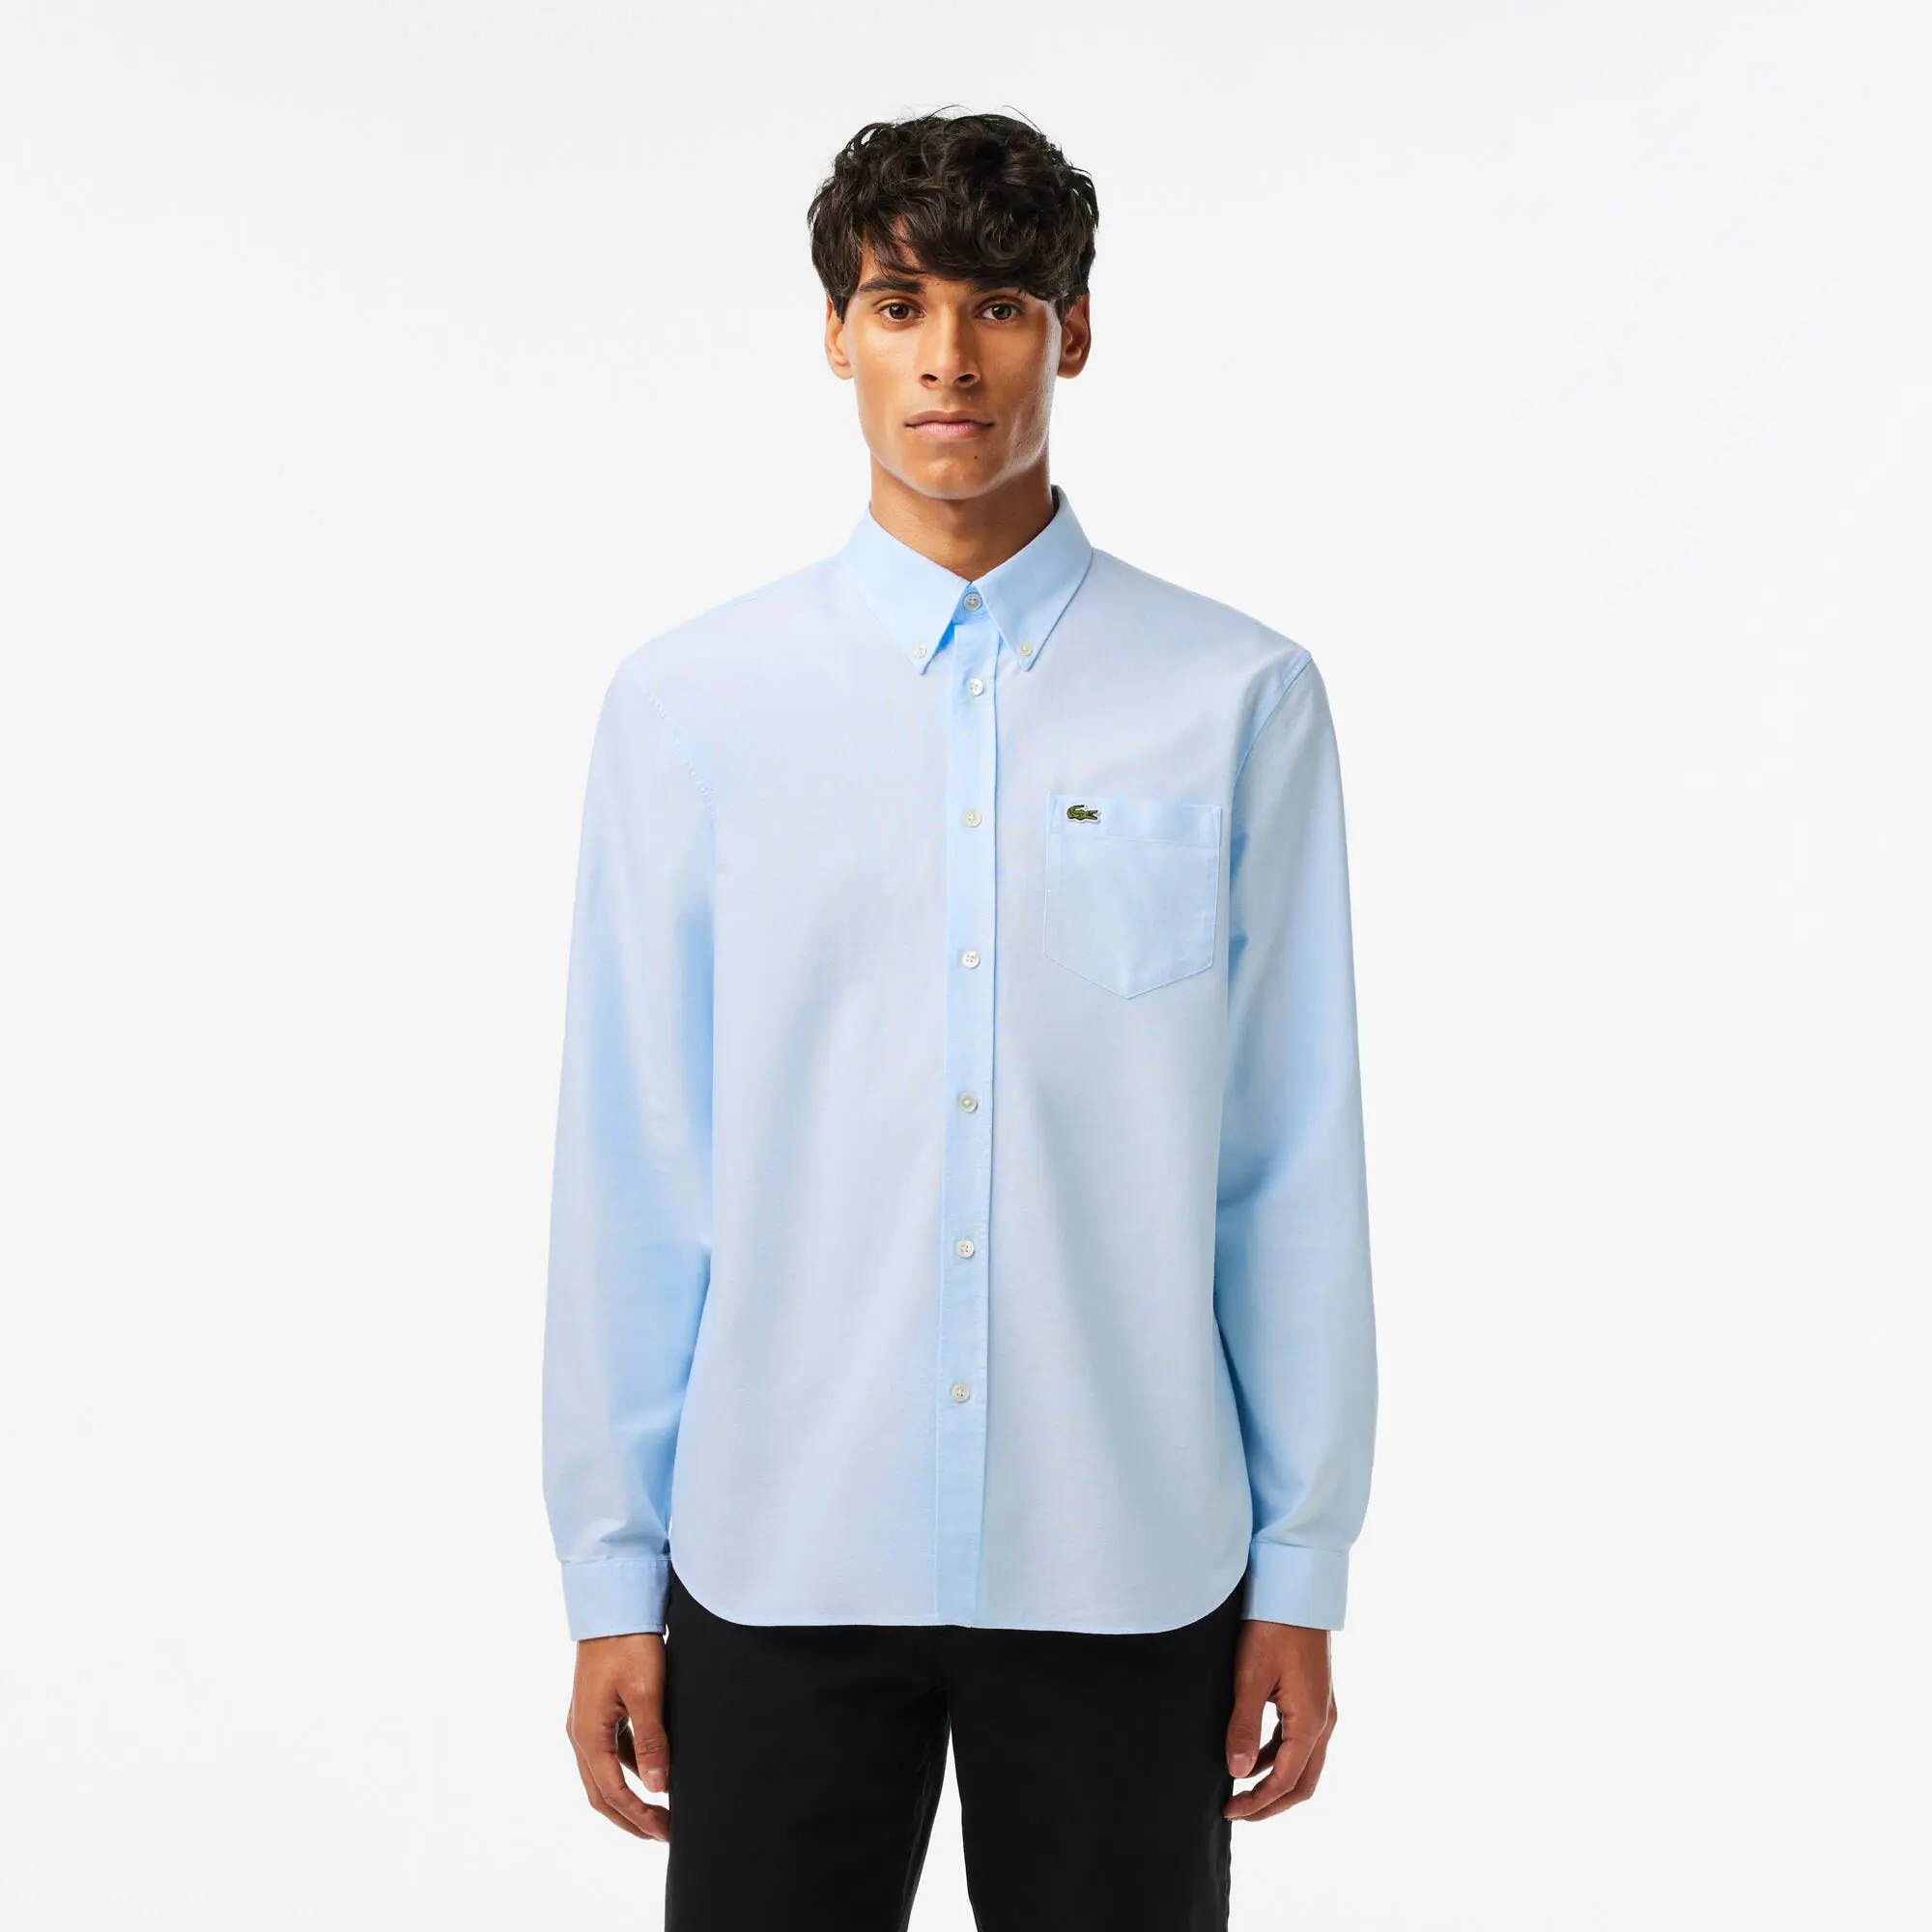 Lacoste Men's Regular Fit Cotton Oxford Shirt. 1